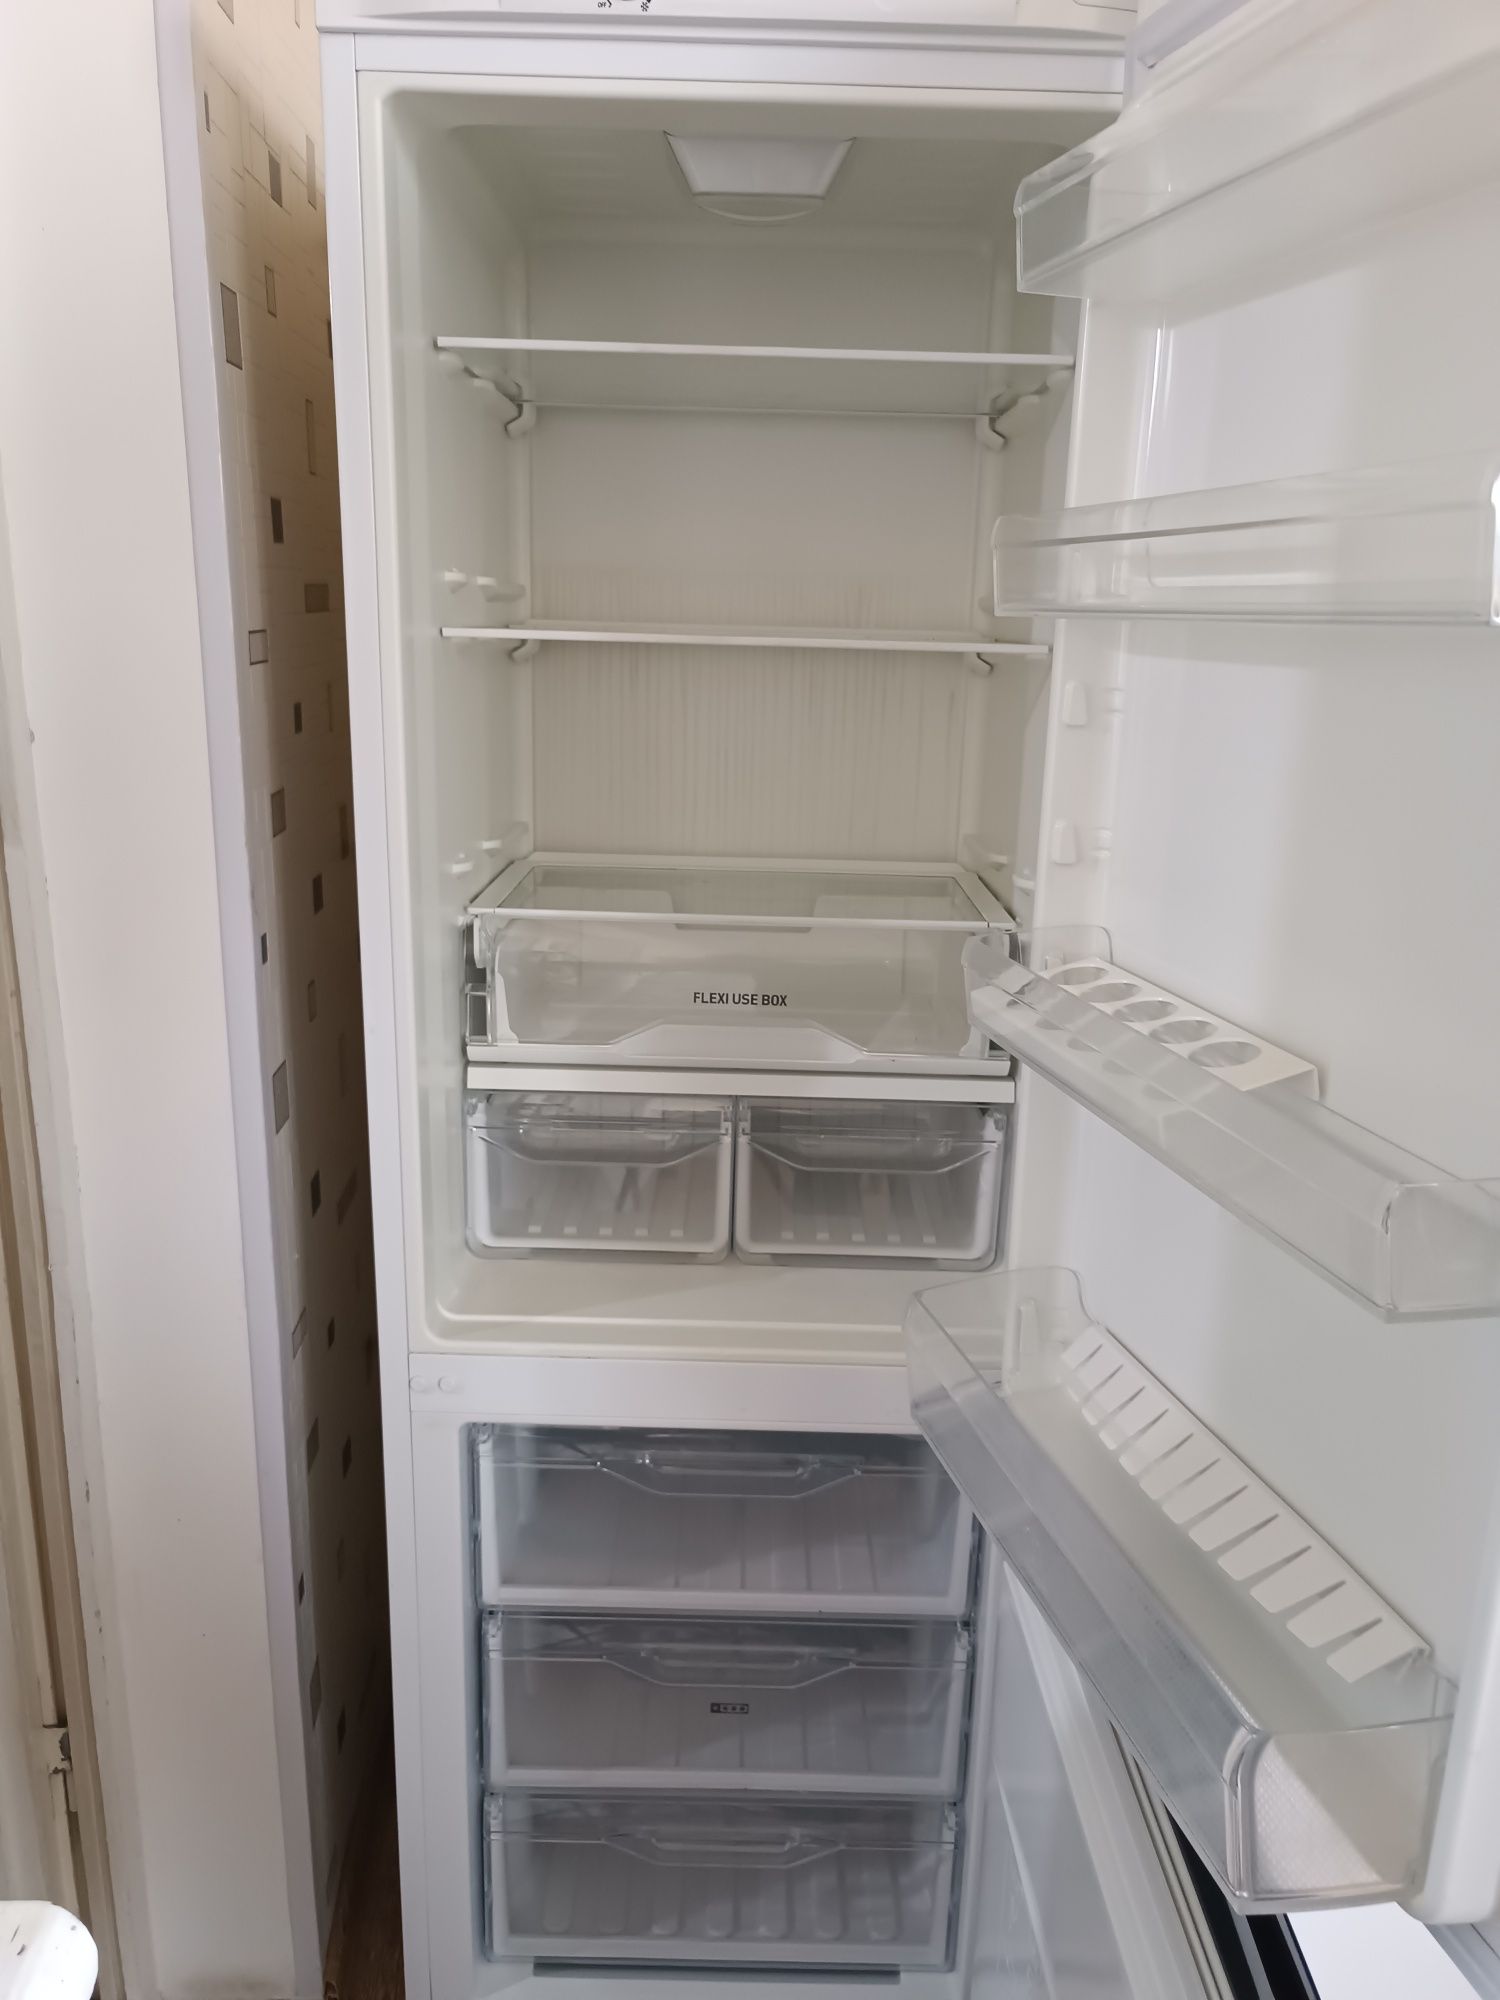 Продам холодильник Индезит в отличном состоянии